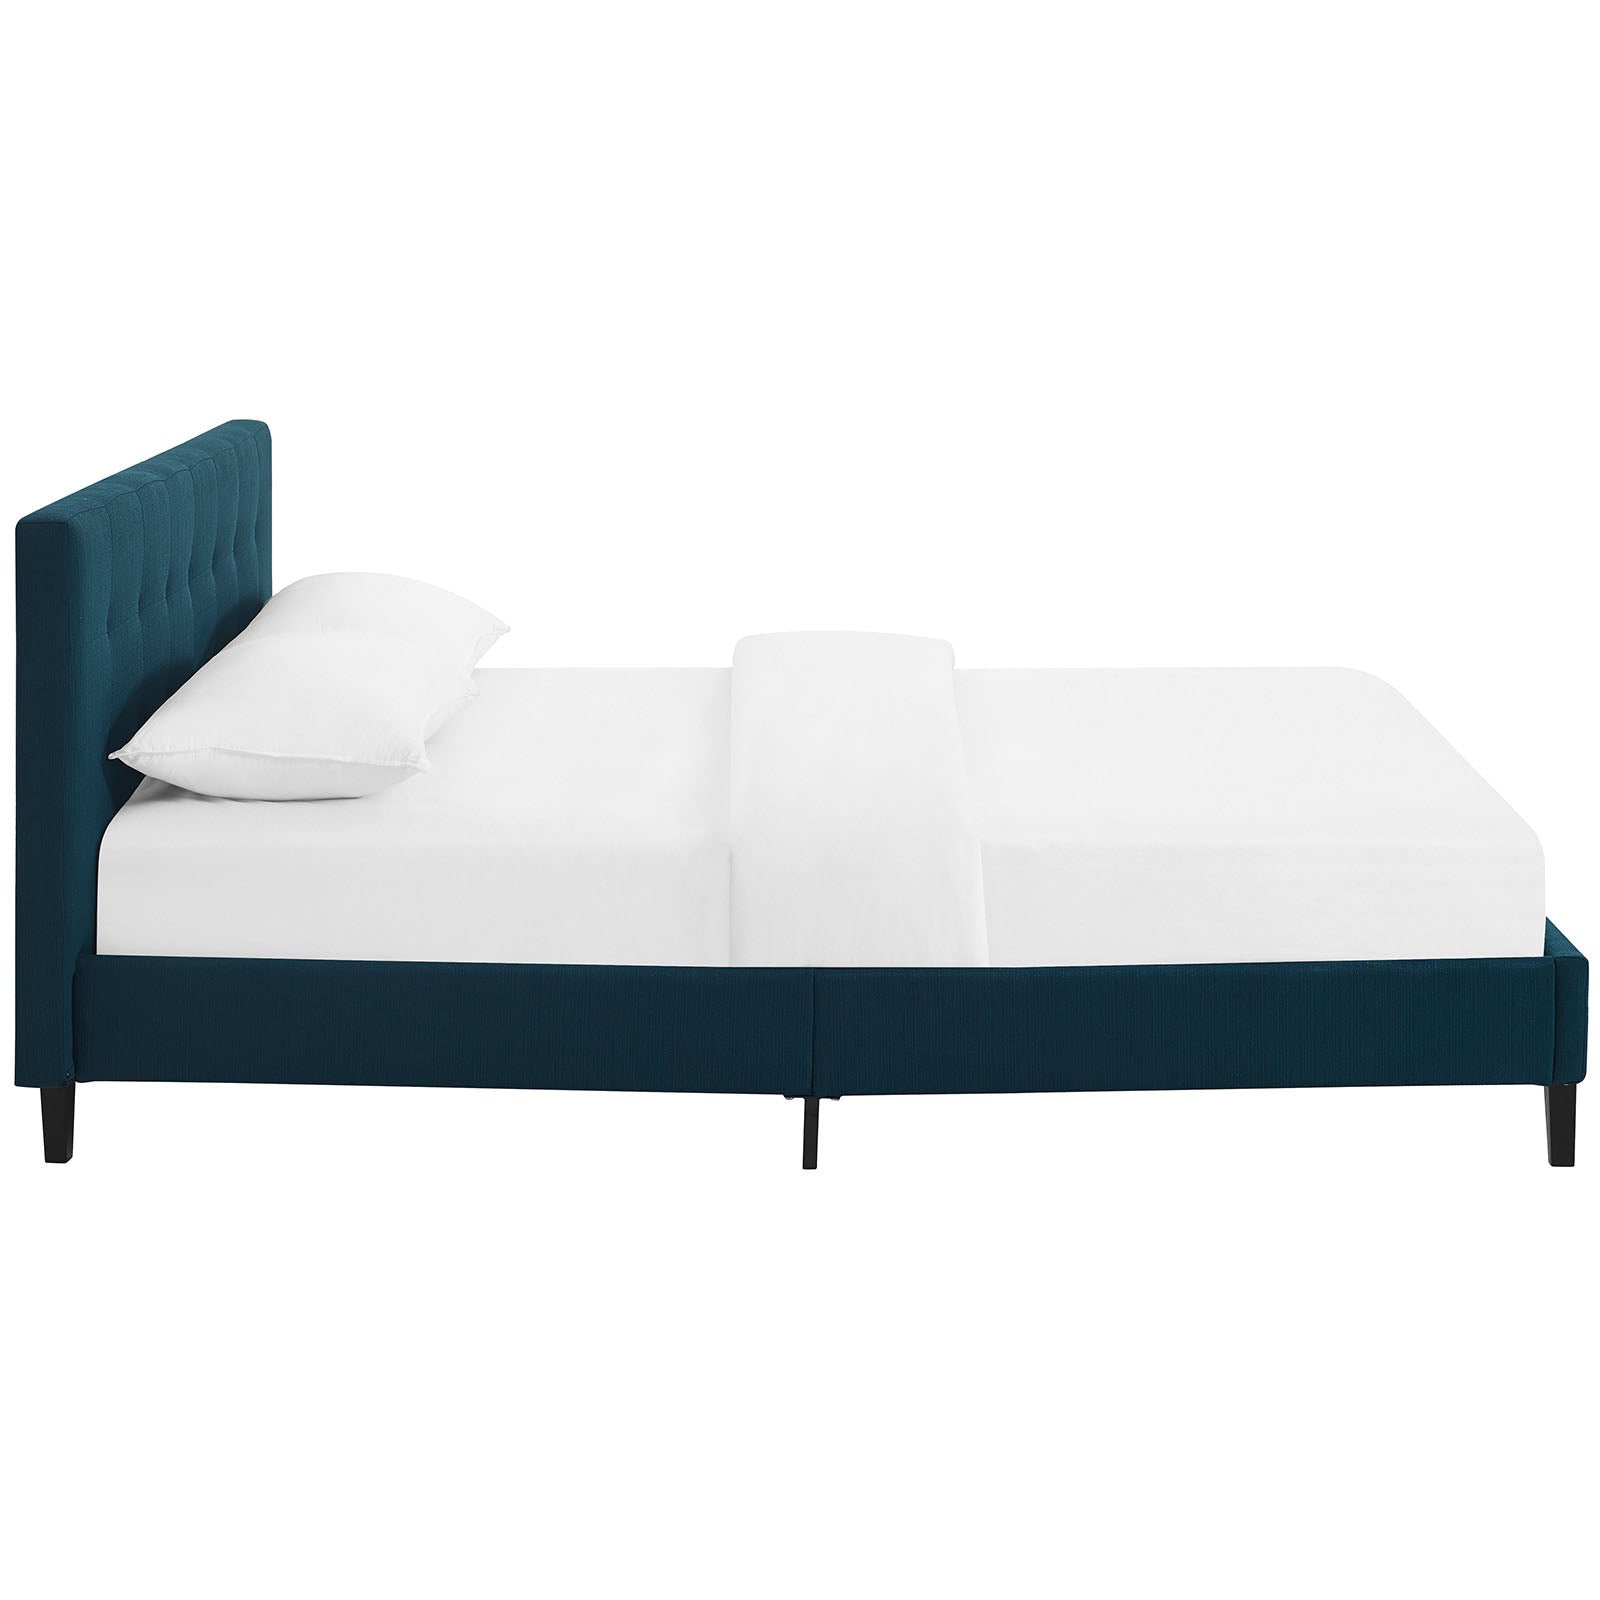 Modway Beds - Linnea Queen Bed Azure